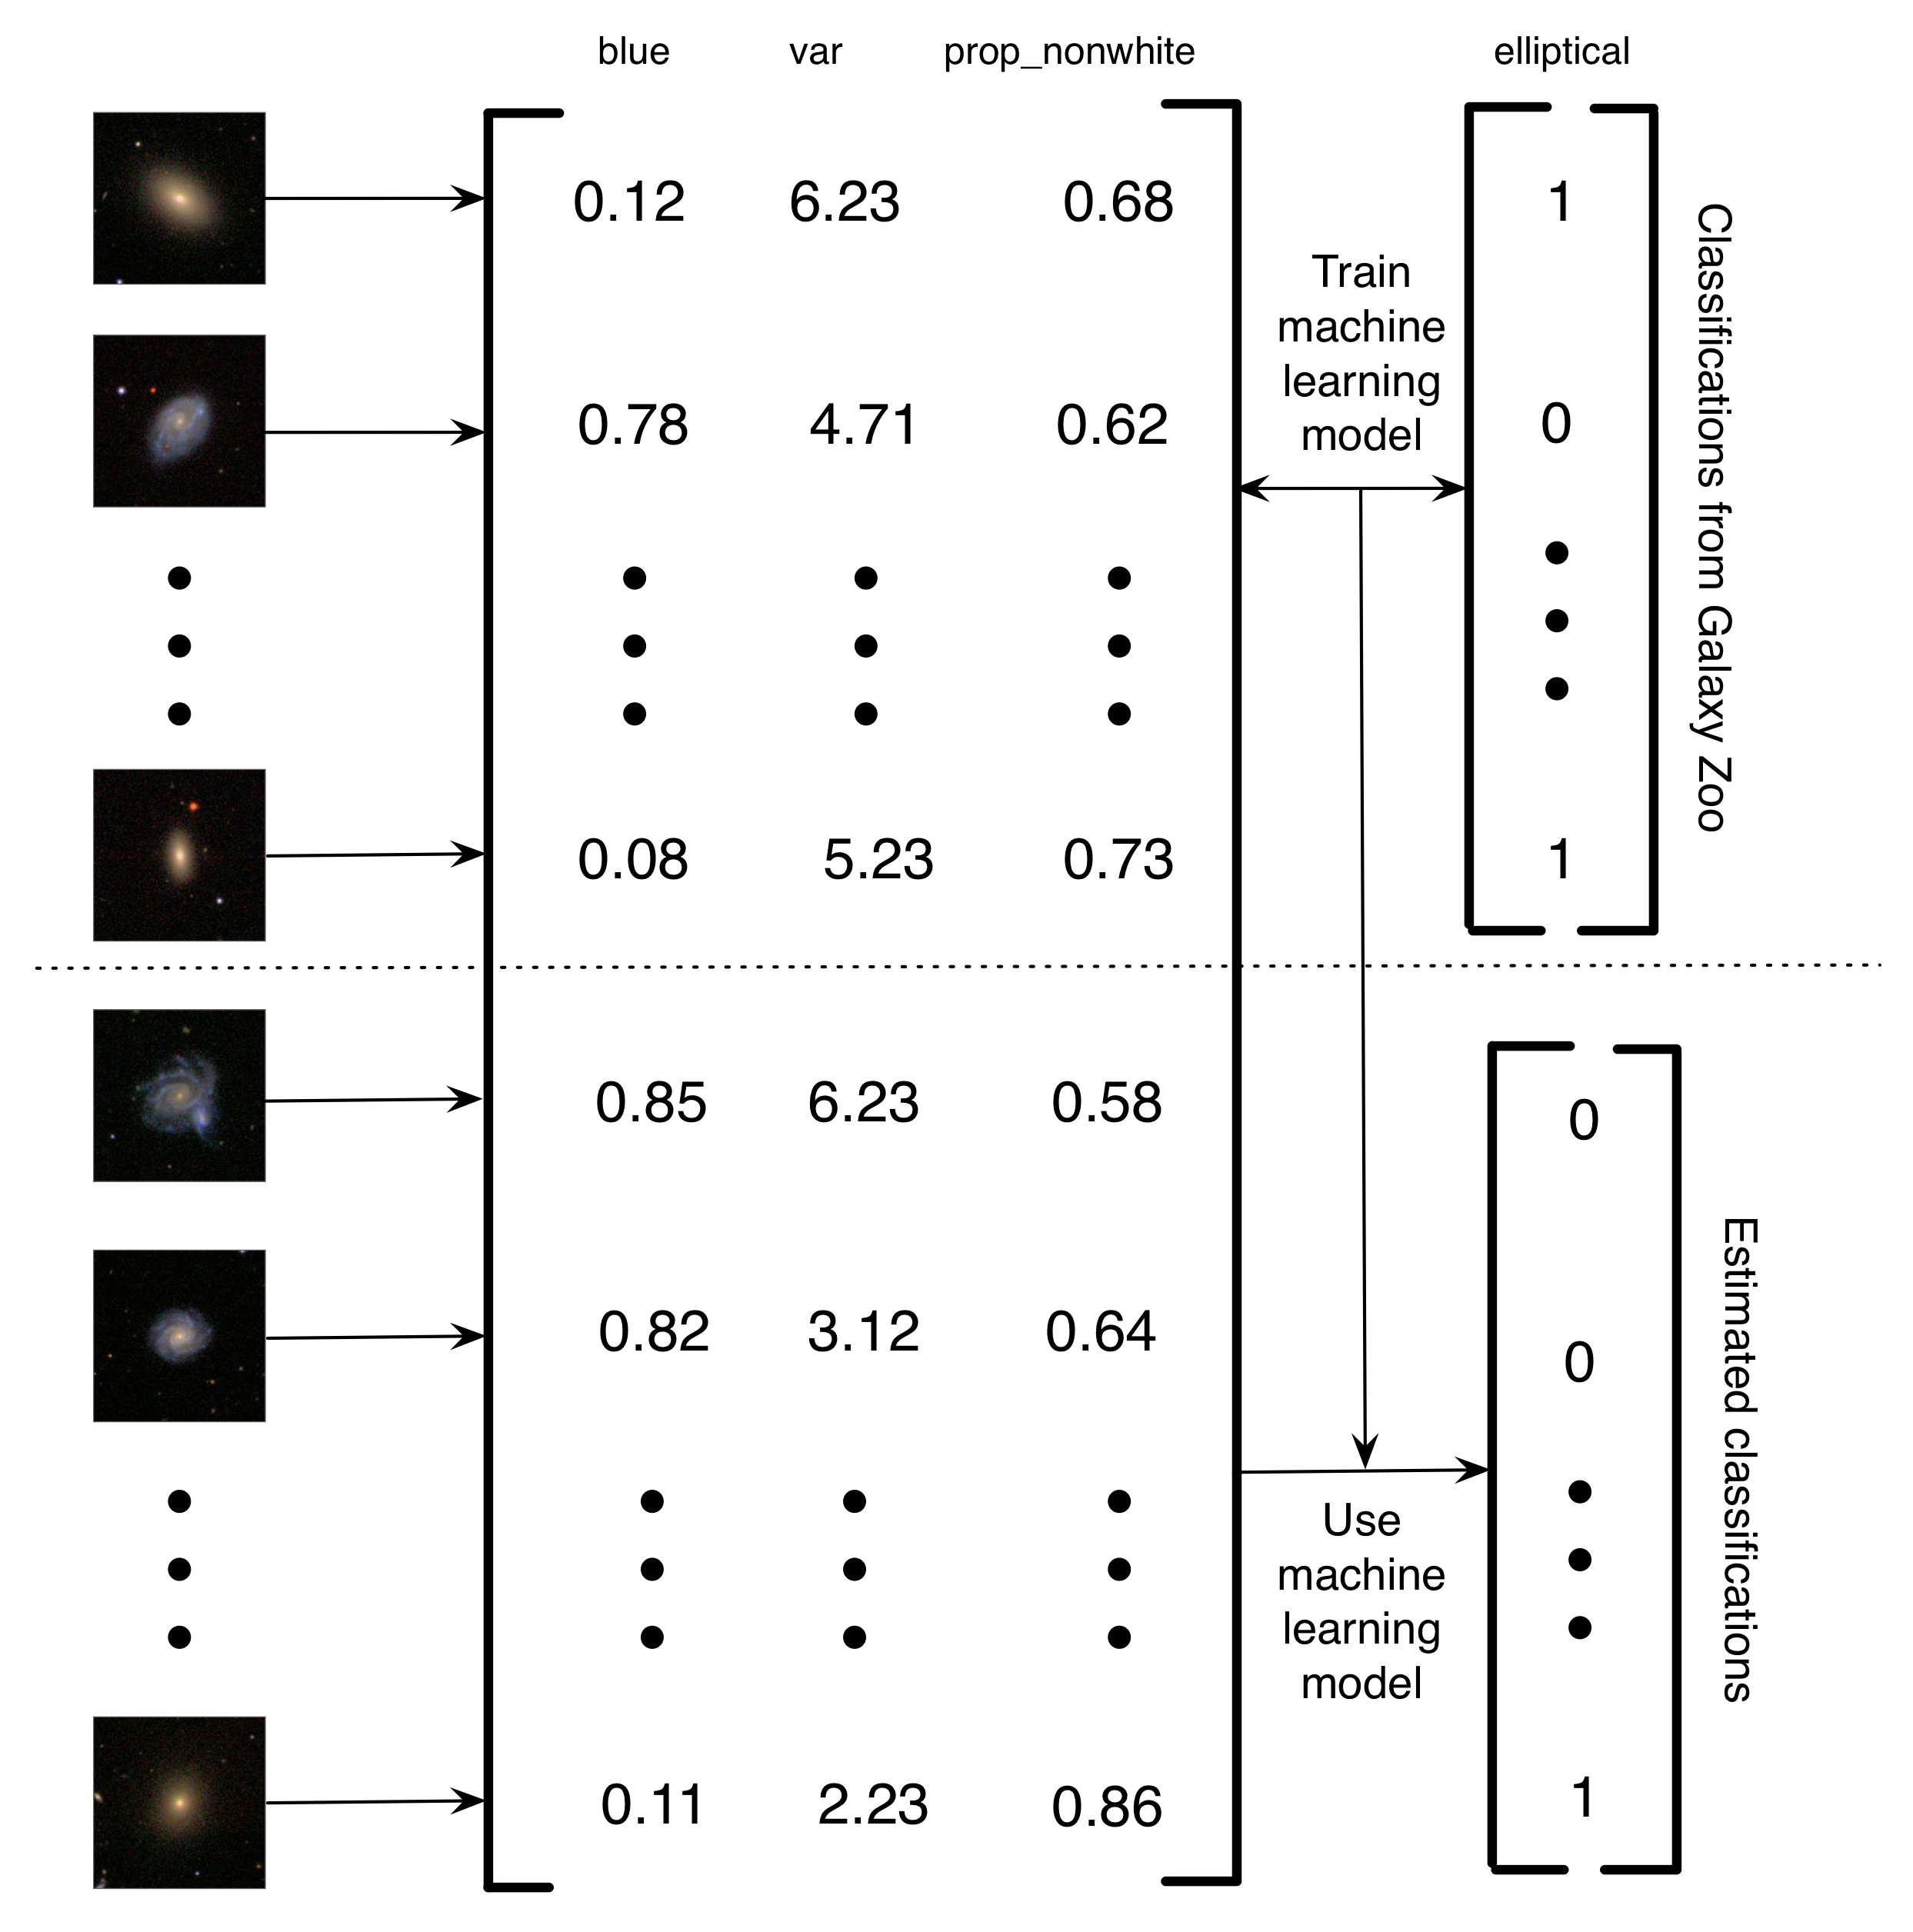 រូបភាពទី 5.4: ការពិពណ៌នាសាមញ្ញអំពីរបៀបដែល Banerji et al ។ (ឆ្នាំ 2010) បានប្រើប្រាស់ប្រភេទទូរស័ព្ទចល័តហ្សាហ្សូអេសដើម្បីហ្វឹកហាត់គំរូម៉ាស៊ីនរៀនដើម្បីធ្វើចំណាត់ថ្នាក់ក្រុមកាឡាក់ស៊ី។ រូបភាពនៃកាឡាក់ស៊ីត្រូវបានបម្លែងទៅជាម៉ាទ្រីសនៃលក្ខណៈពិសេស។ ក្នុងឧទាហរណ៍សាមញ្ញនេះមានលក្ខណៈពិសេសបី (ចំនួនពណ៌ខៀវនៅក្នុងរូបភាព, វ៉ារ្យង់នៅក្នុងពន្លឺនៃភីកសែលនិងសមាមាត្រនៃភីកសែល nonwhite) ។ បន្ទាប់មកសម្រាប់រូបភាពកូនចិញ្ចឹមទូរស័ព្ទ Galaxy Zoo ត្រូវបានប្រើដើម្បីហ្វឹកហាត់គំរូម៉ាស៊ីនរៀន។ ចុងបញ្ចប់ការរៀនម៉ាស៊ីនត្រូវបានប្រើដើម្បីប៉ាន់ស្មានចំណាត់ថ្នាក់សម្រាប់កាឡាក់ស៊ីដែលនៅសេសសល់។ ខ្ញុំហៅវាថាគម្រោងគណនាគណនាមនុស្សដោយប្រើកុំព្យួទ័រព្រោះថាជាជាងការមានមនុស្សដោះស្រាយបញ្ហាវាមានមនុស្សបង្កើតទិន្នន័យដែលអាចប្រើដើម្បីបង្ហាត់កុំព្យូទ័រដើម្បីដោះស្រាយបញ្ហា។ អត្ថប្រយោជន៍នៃប្រព័ន្ធគណនាមនុស្សដែលជួយកុំព្យូទ័រនេះគឺថាវាអនុញ្ញាតឱ្យអ្នកដោះស្រាយទិន្នន័យដែលគ្មានកំណត់ដ៏សំខាន់នៃការប្រើប្រាស់ដោយប្រើតែការកំនត់នៃការប្រឹងប្រែងរបស់មនុស្សប៉ុណ្ណោះ។ រូបភាពនៃកាឡាក់ស៊ីបានបង្កើតឡើងដោយការអនុញ្ញាតពី Sloan Digital Sky Survey ។